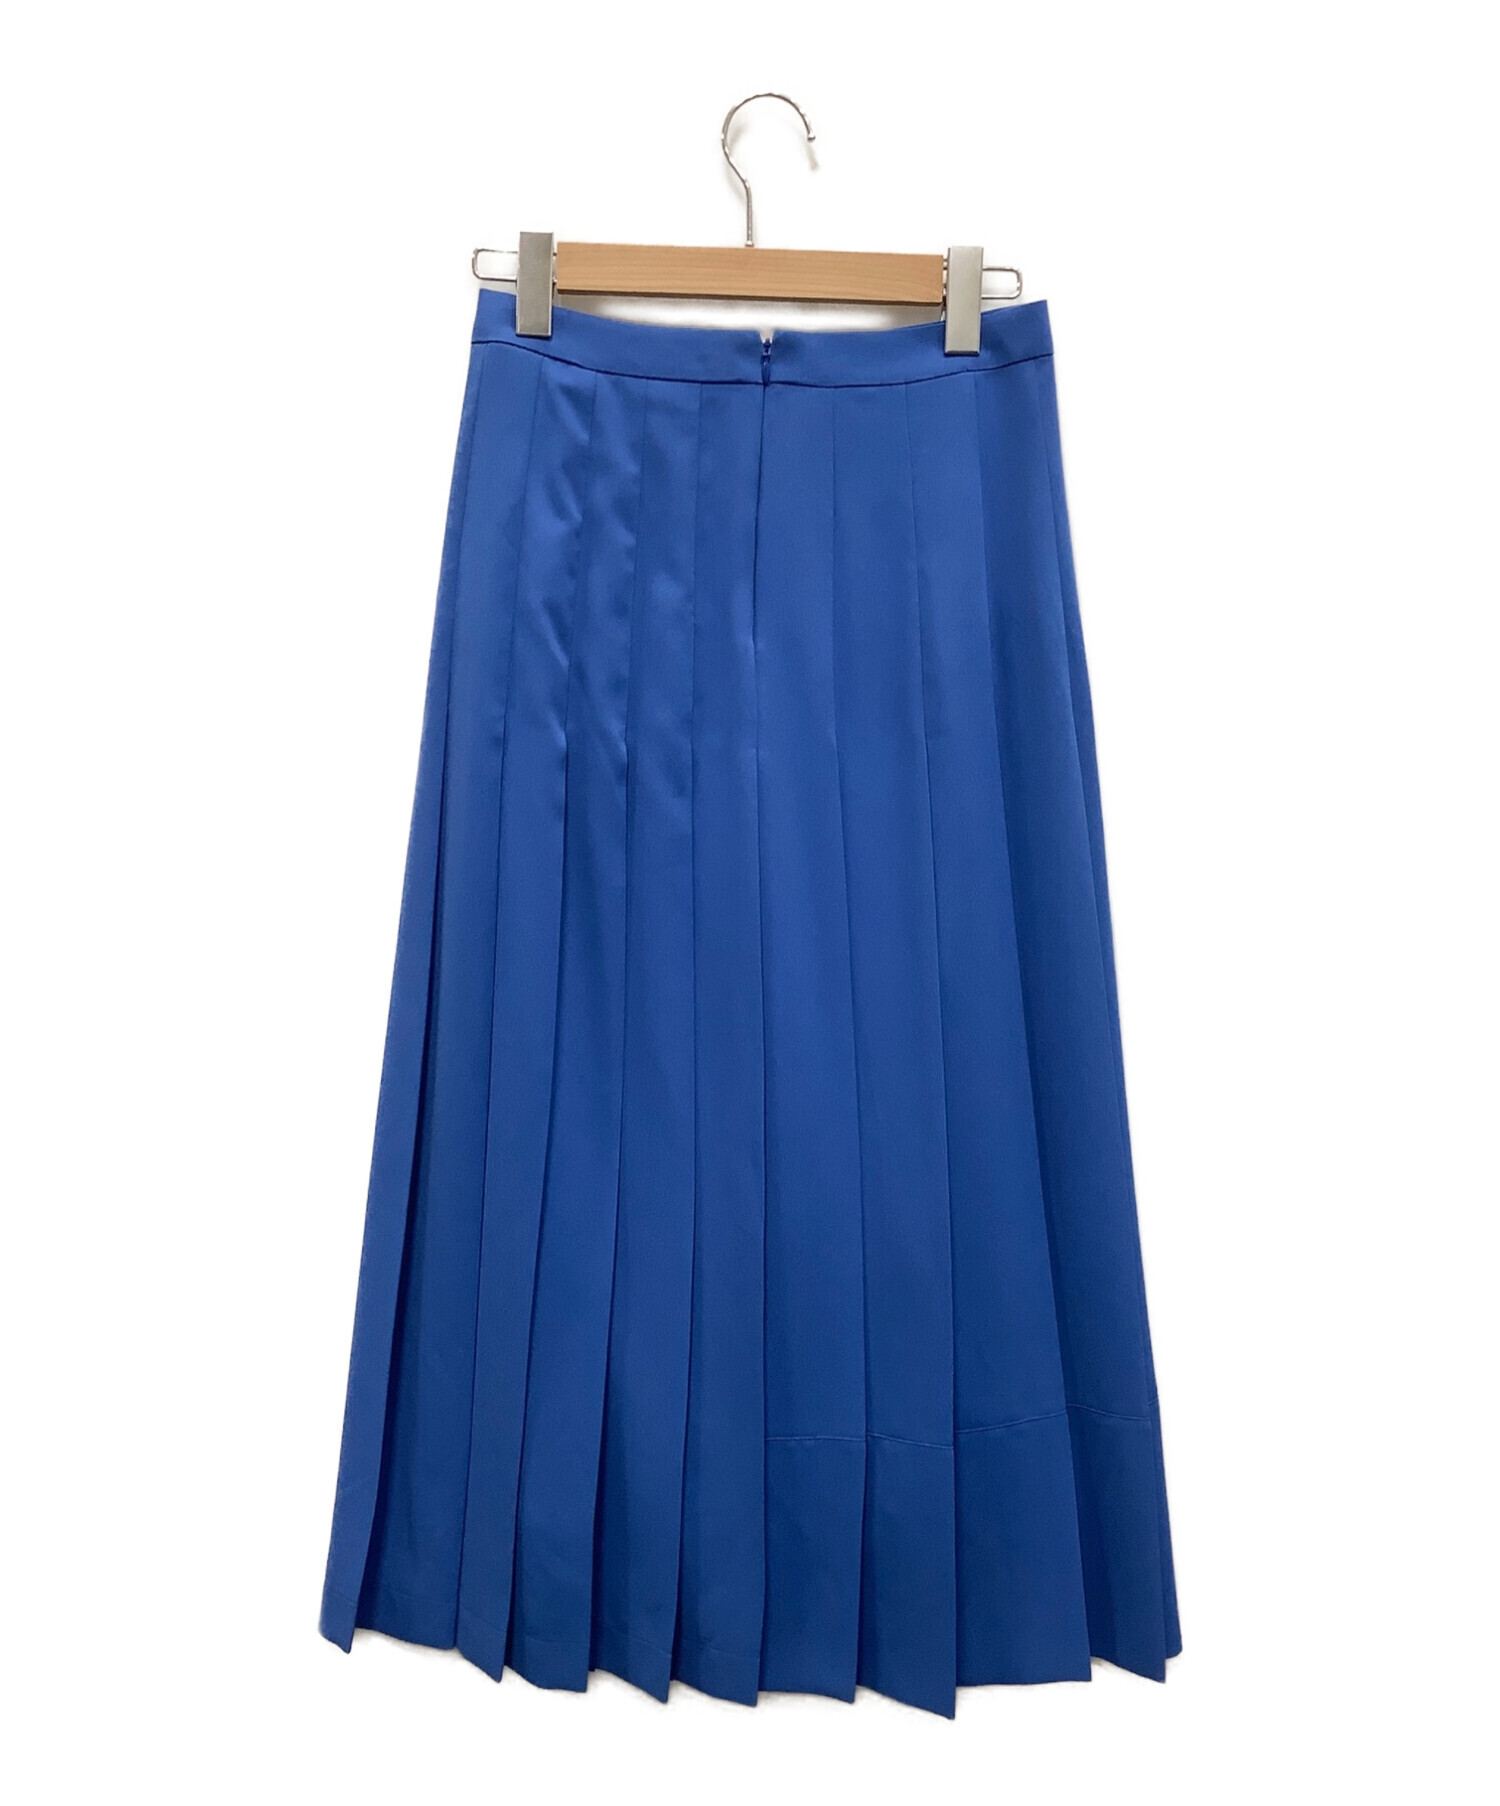 allureville (アルアバイル) プリーツスカート ブルー サイズ:2 未使用品